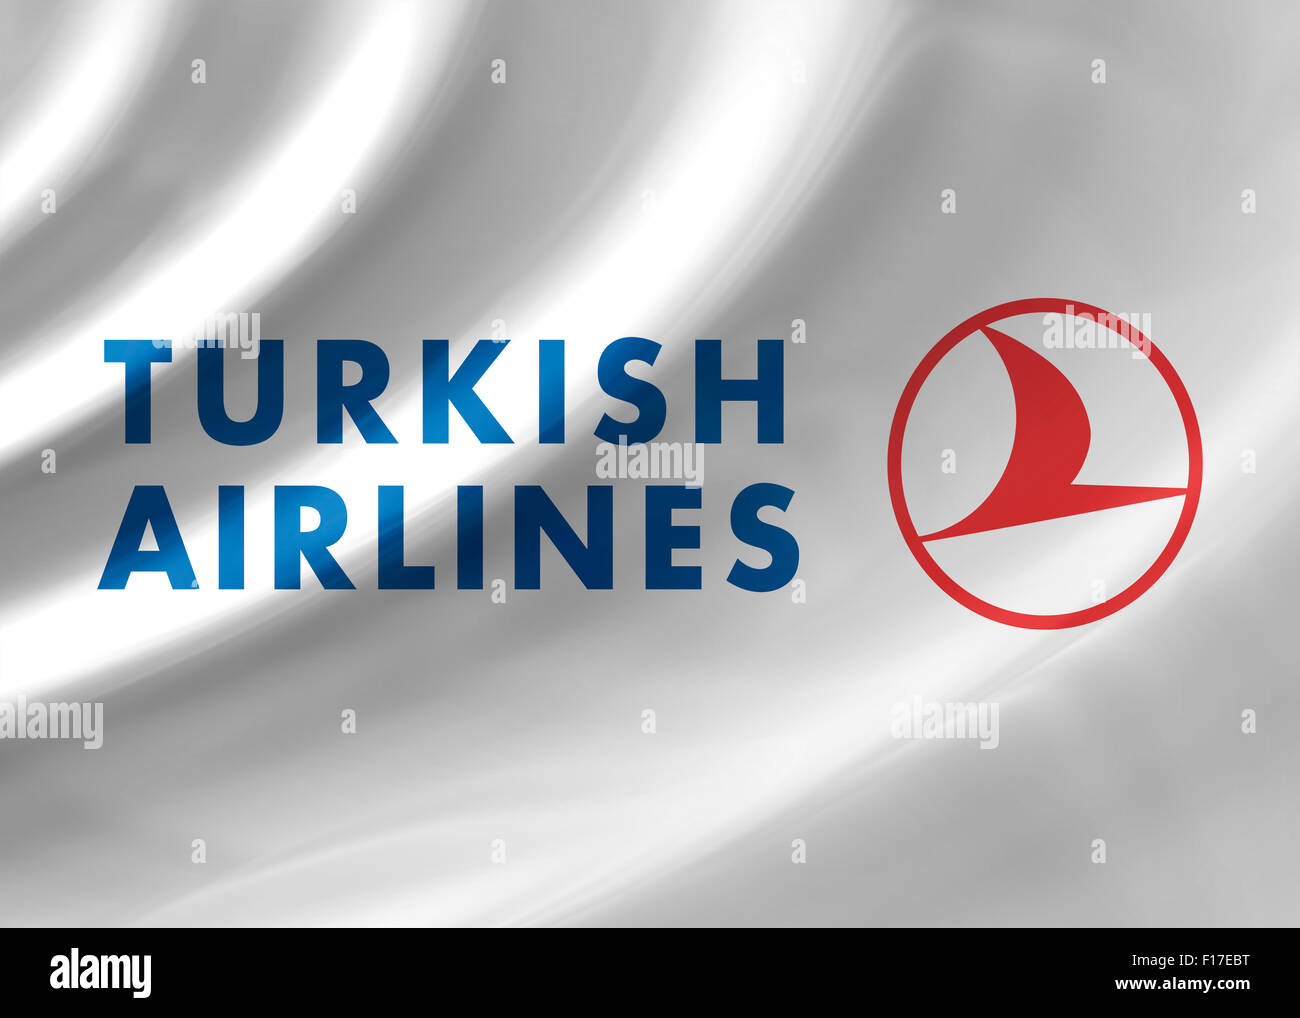 Turkish Airlines logo Symbol Flagge emblem Zeichen Stockfotografie - Alamy